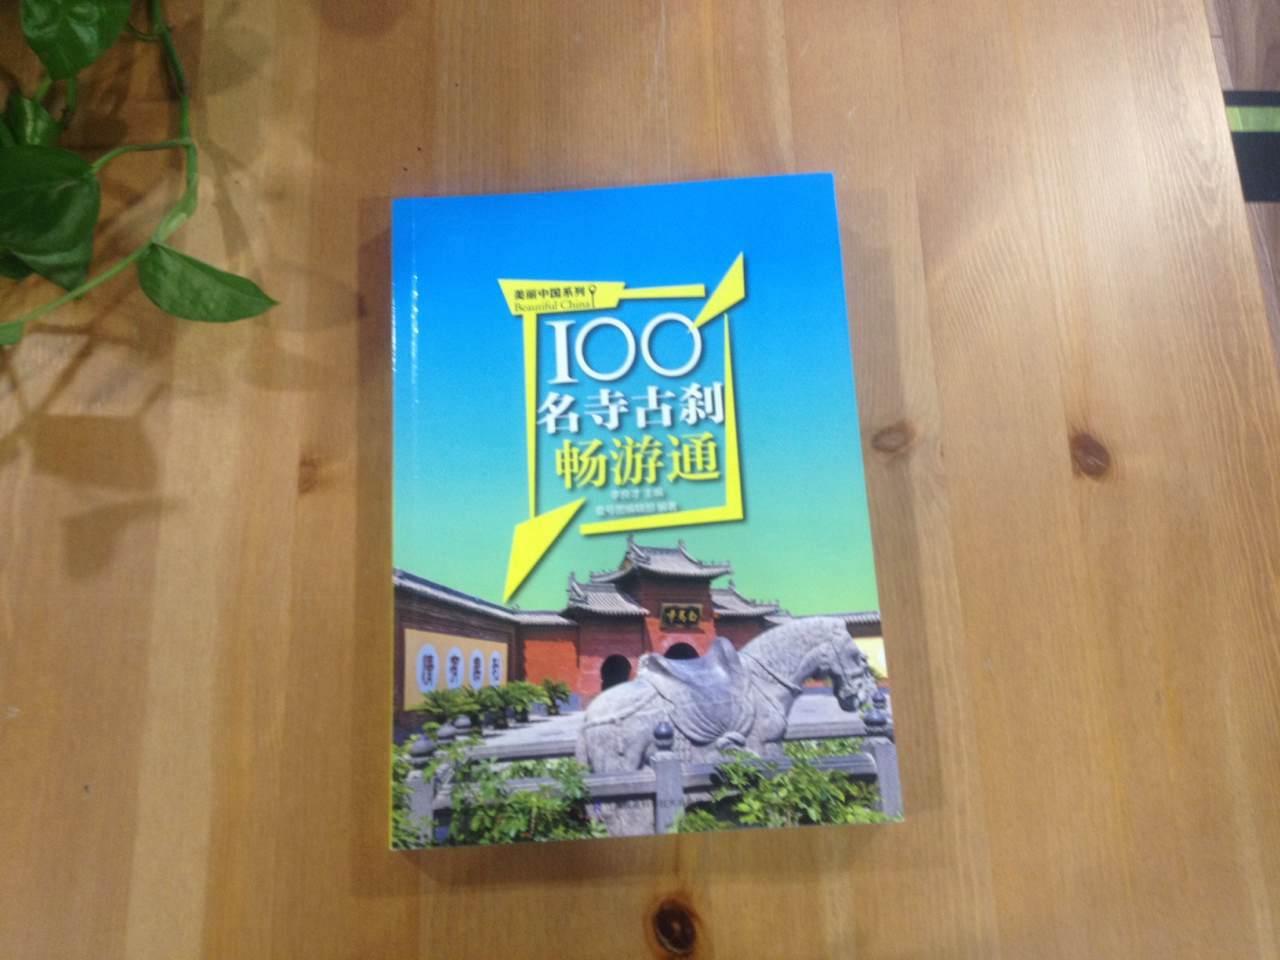 详细介绍了中国100处名寺古刹，值得一看。为以后旅游找点方向，去过的，再看看书，更好！推荐购买！